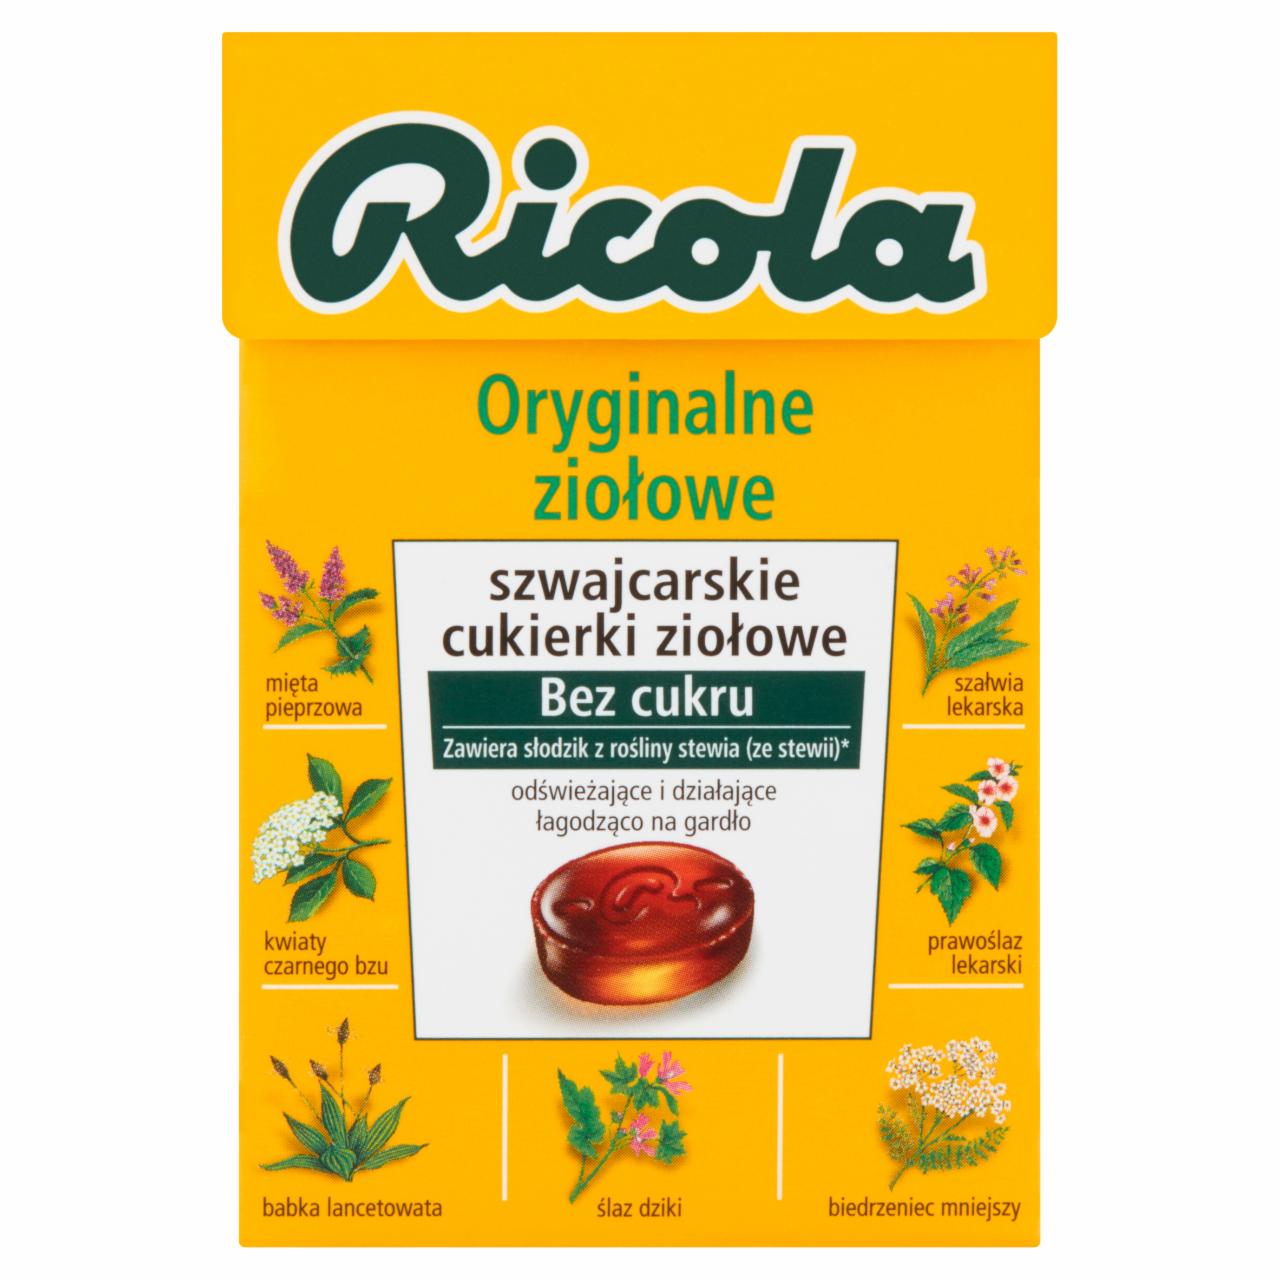 Zdjęcia - Ricola Oryginalne ziołowe szwajcarskie cukierki ziołowe 40 g